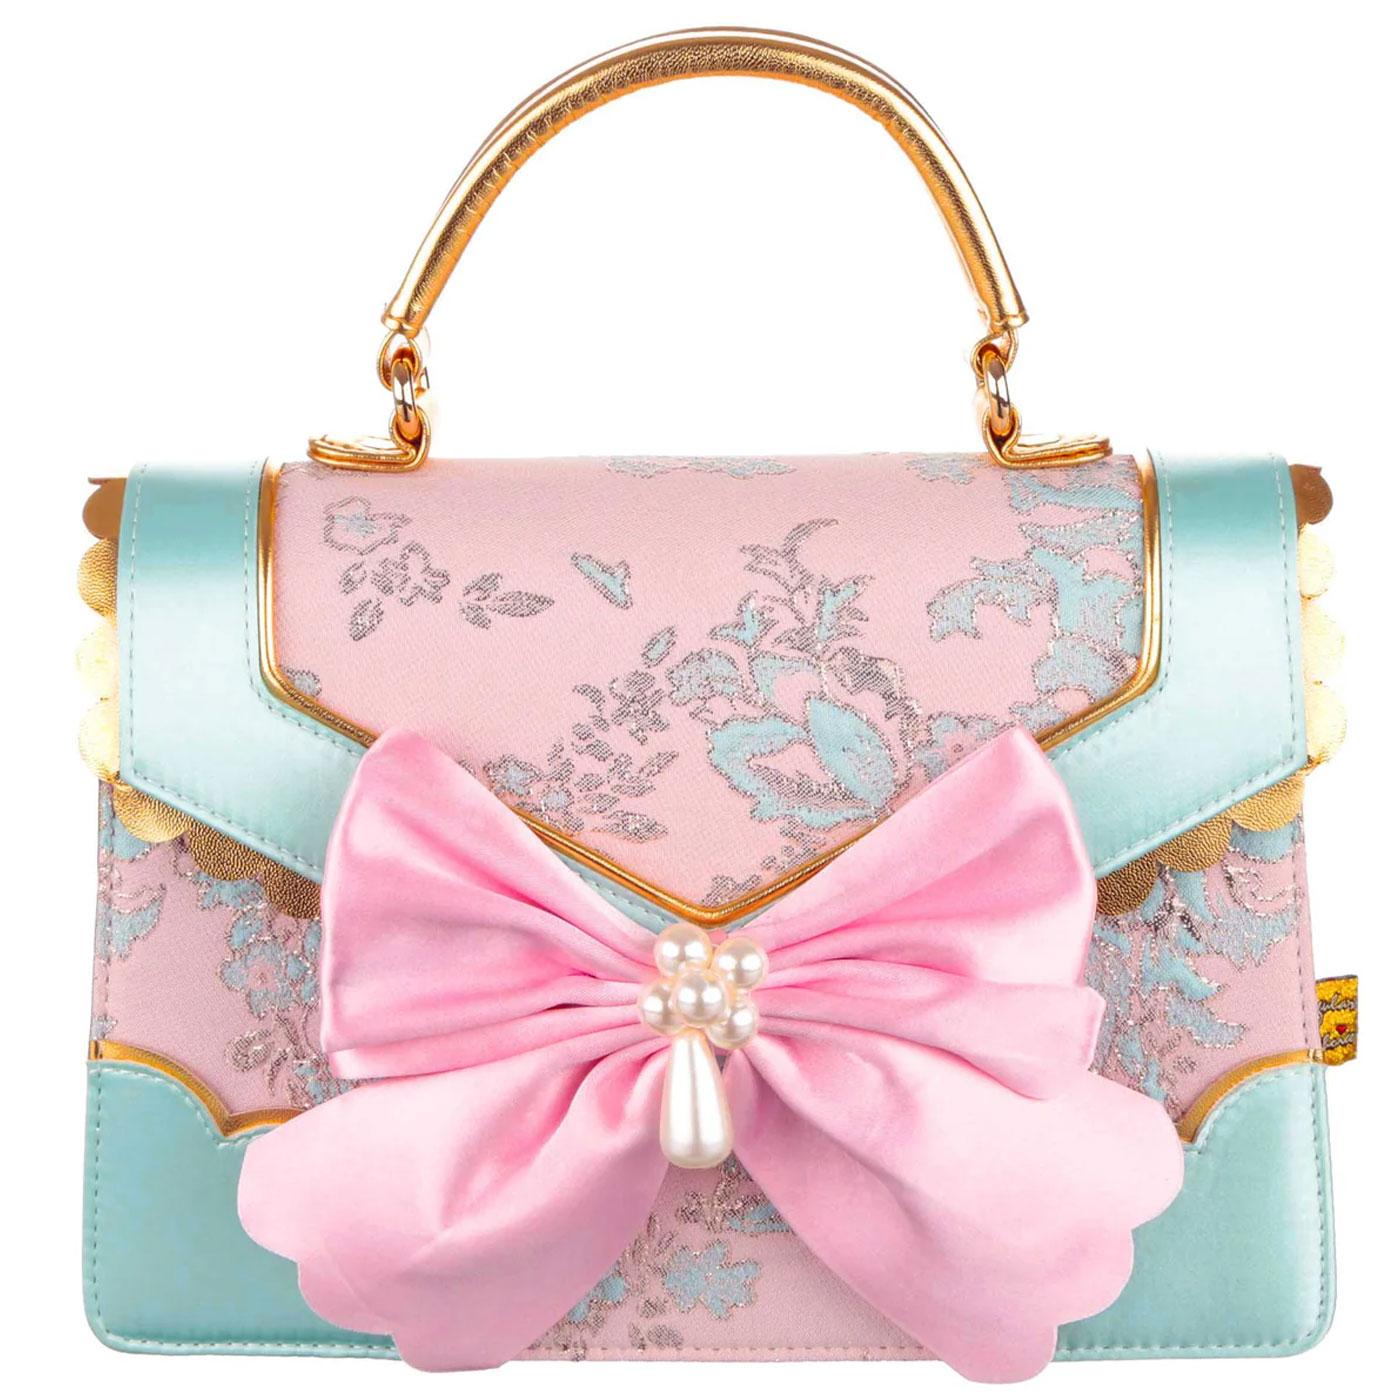 Allonsy Antoinette IRREGULAR CHOICE Retro Handbag